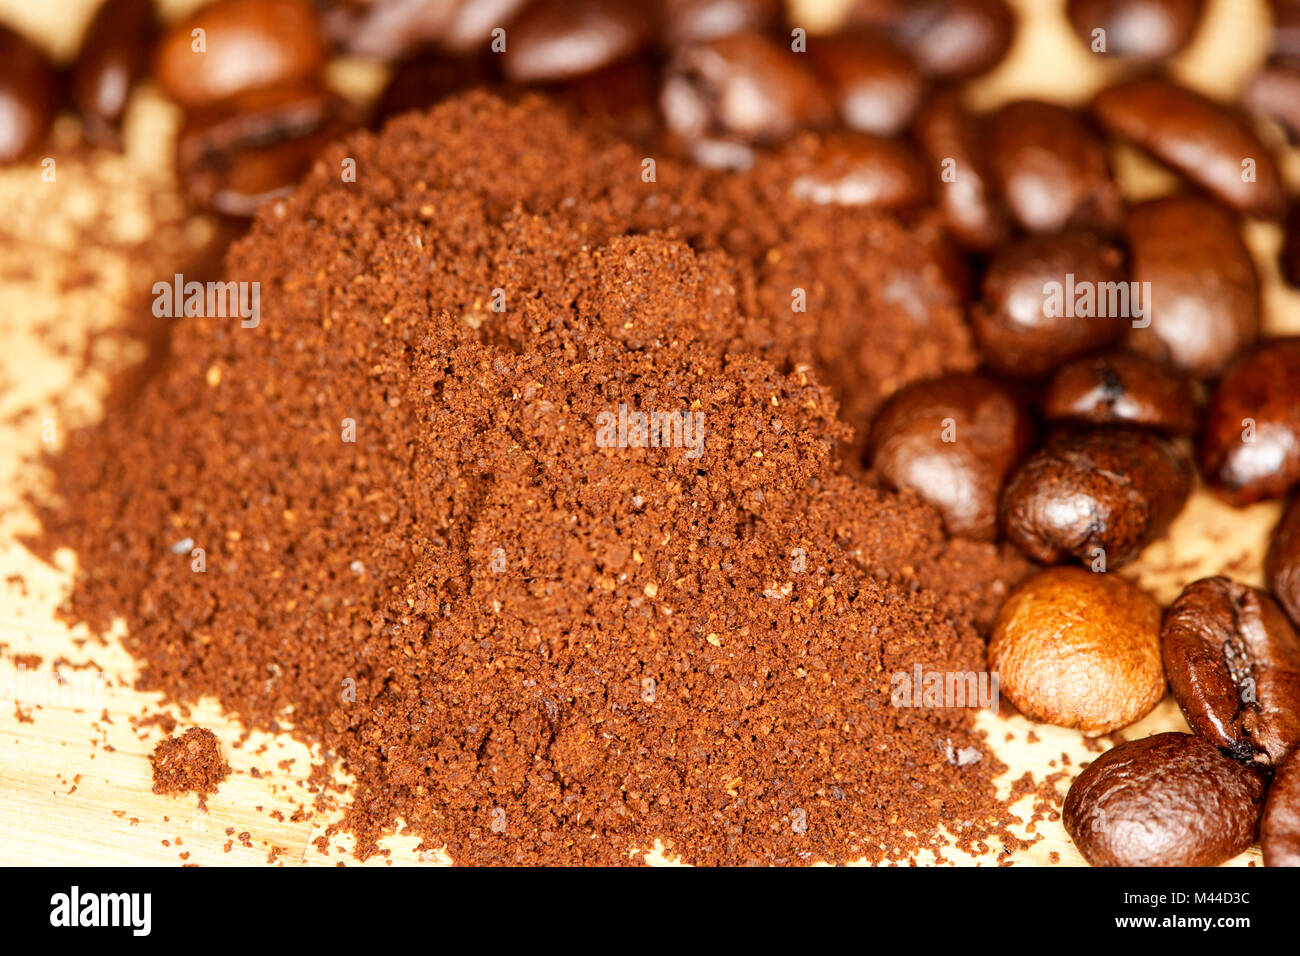 Macinatura grossolana caffè appena macinato e chicco di caffè miscela di arabica e robusta Foto Stock